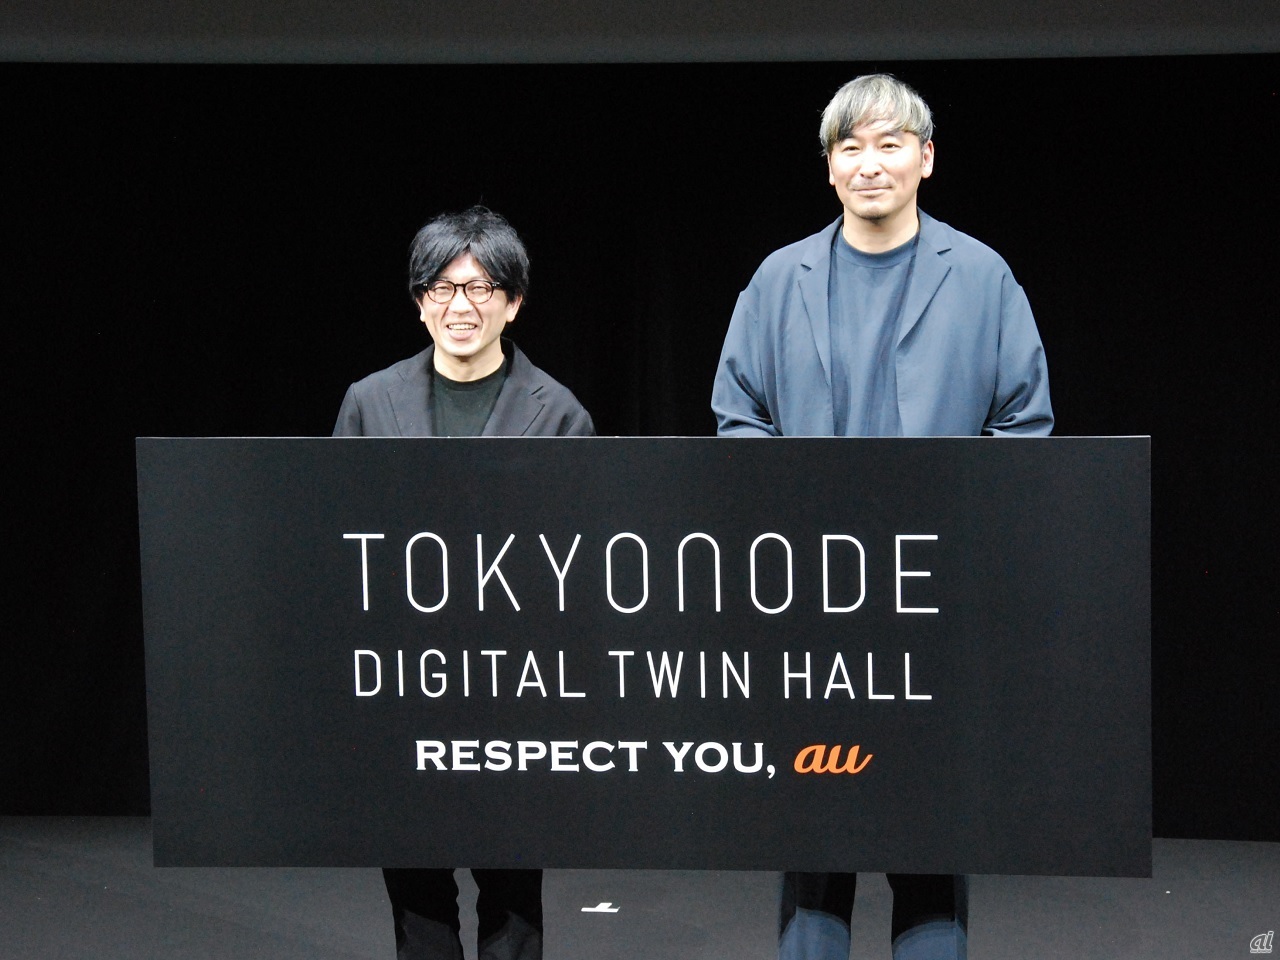 （左から）森ビル 新領域事業部 TOKYO NODE運営室 兼 TOKYO NODE LAB Executive Producer 杉山央氏、KDDI 事業創造本部 副本部長 中馬和彦氏